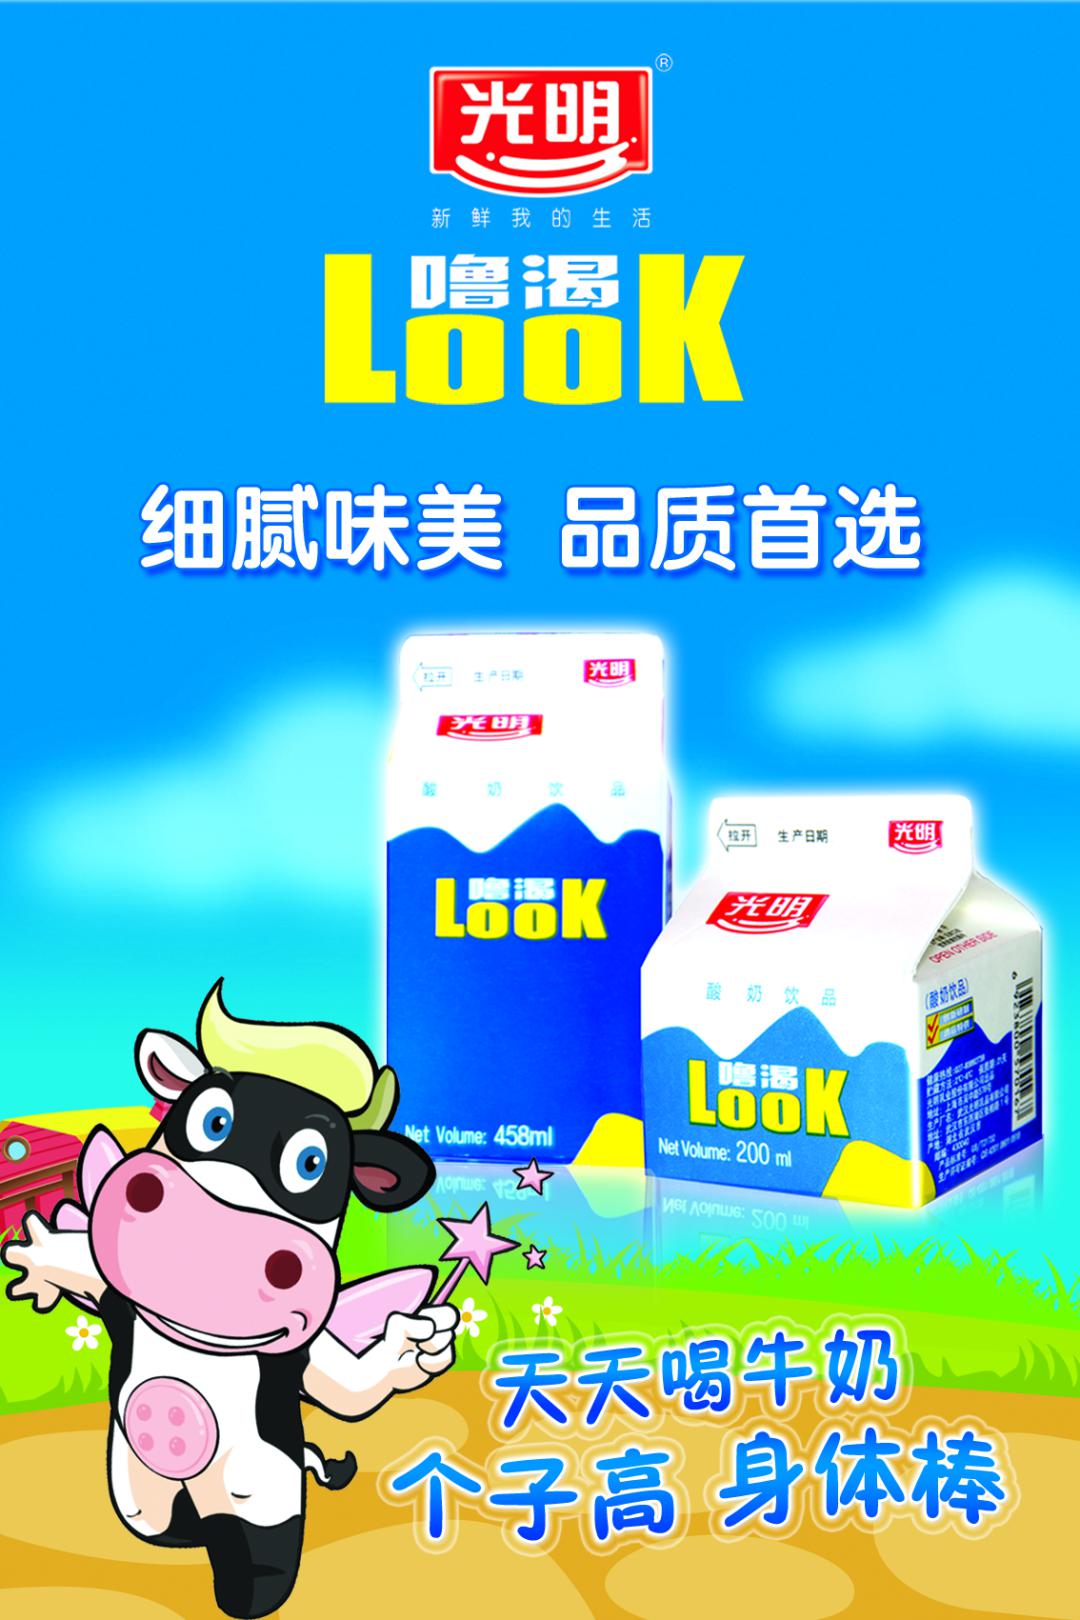 光明乳业股份有限公司(光明牛奶)是由国资,外资,民营资本组成的产权